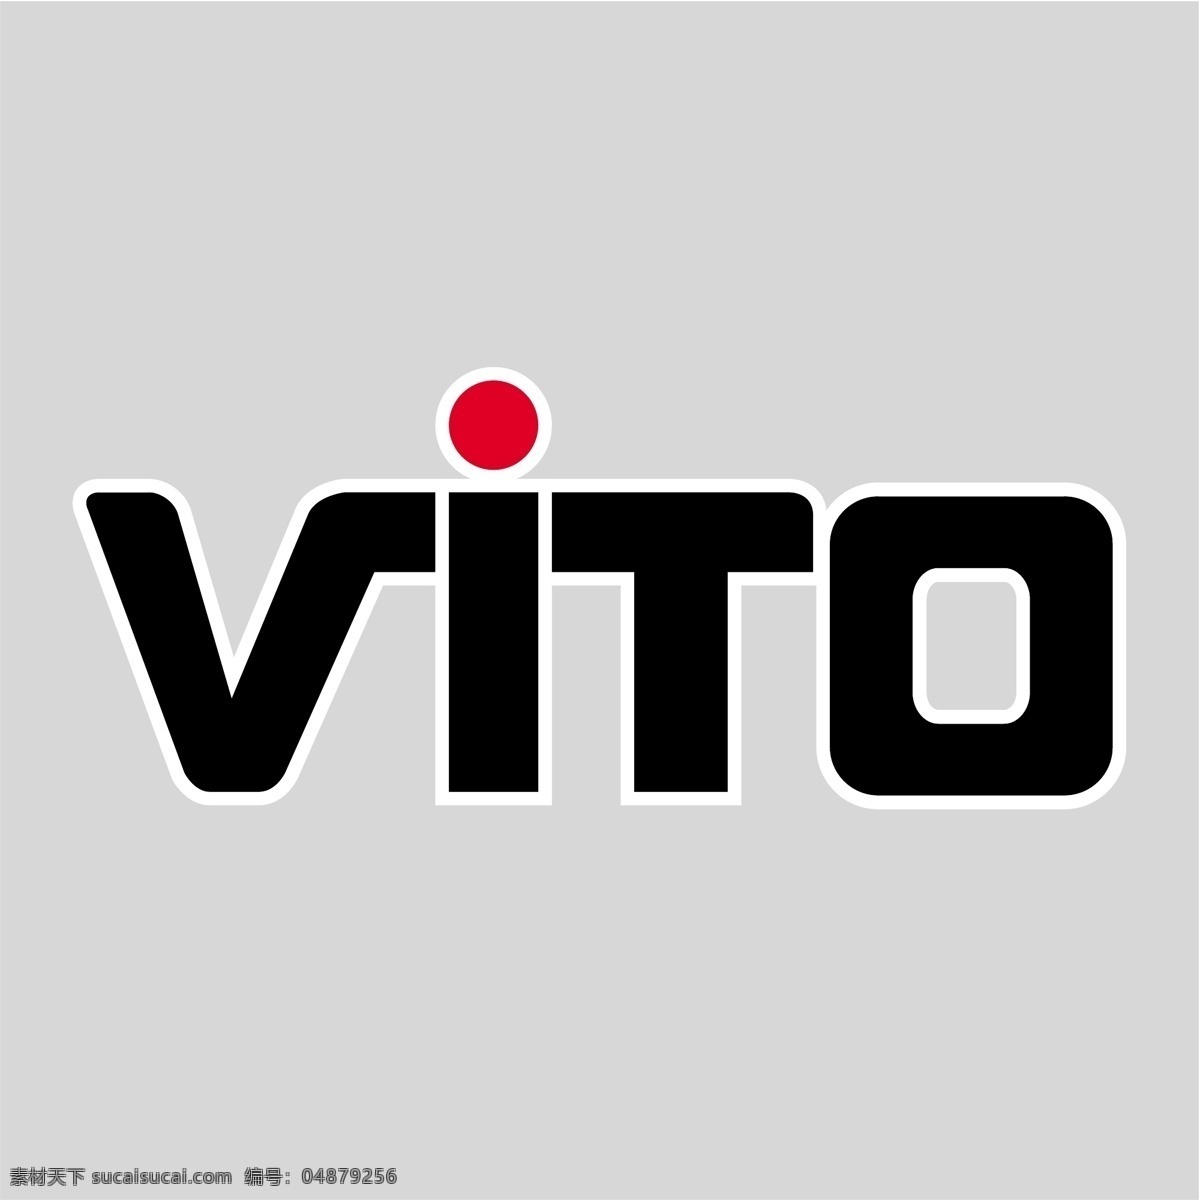 2011 奔驰 维托 梅 赛 德斯 vito 范 轮廓 矢量 车 一级 大纲 向量 概述 矢量图 建筑家居